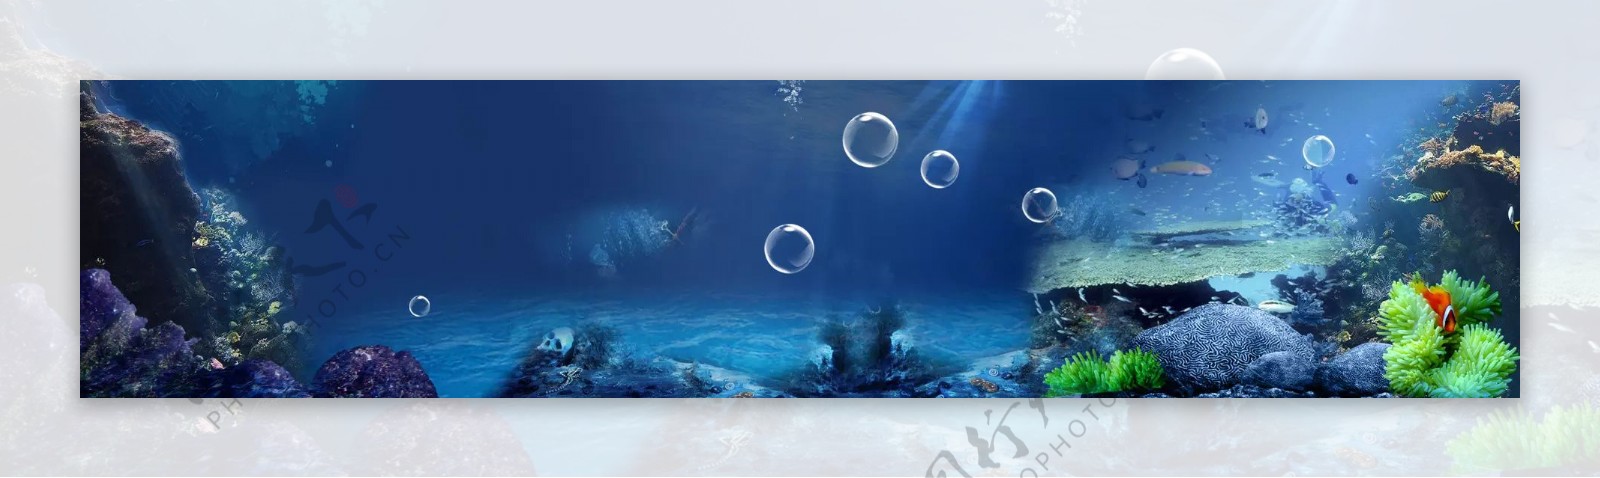 蓝色海底世界banner背景素材